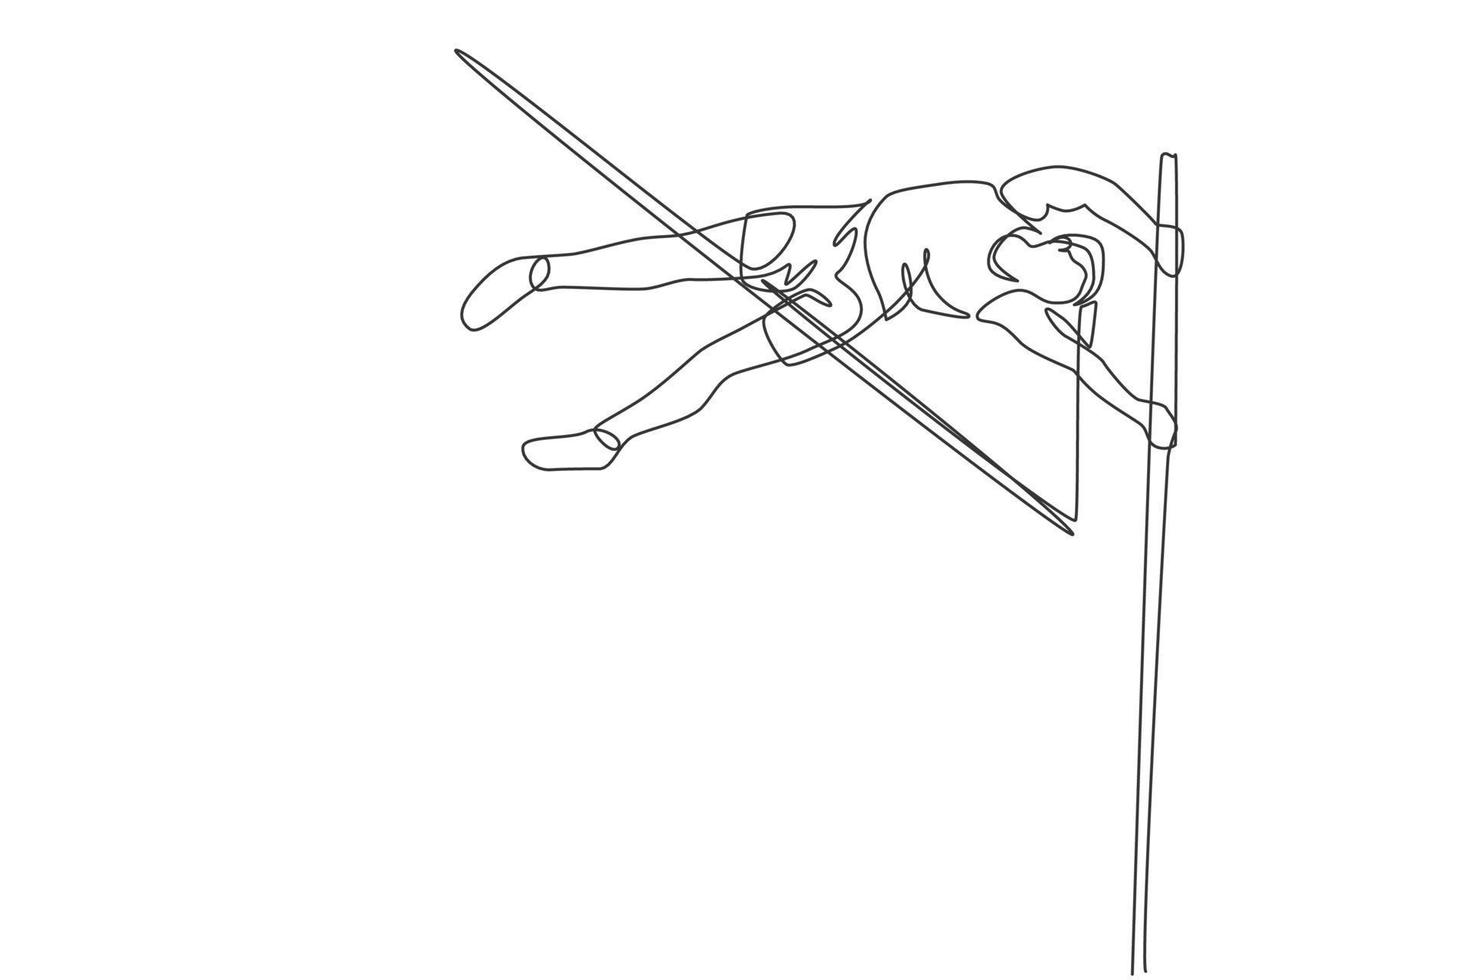 um único desenho de linha de exercício de jovem enérgico para passar a barra na ilustração vetorial de jogo de salto com vara. conceito de esporte atlético saudável. evento de competição. design moderno de desenho de linha contínua vetor